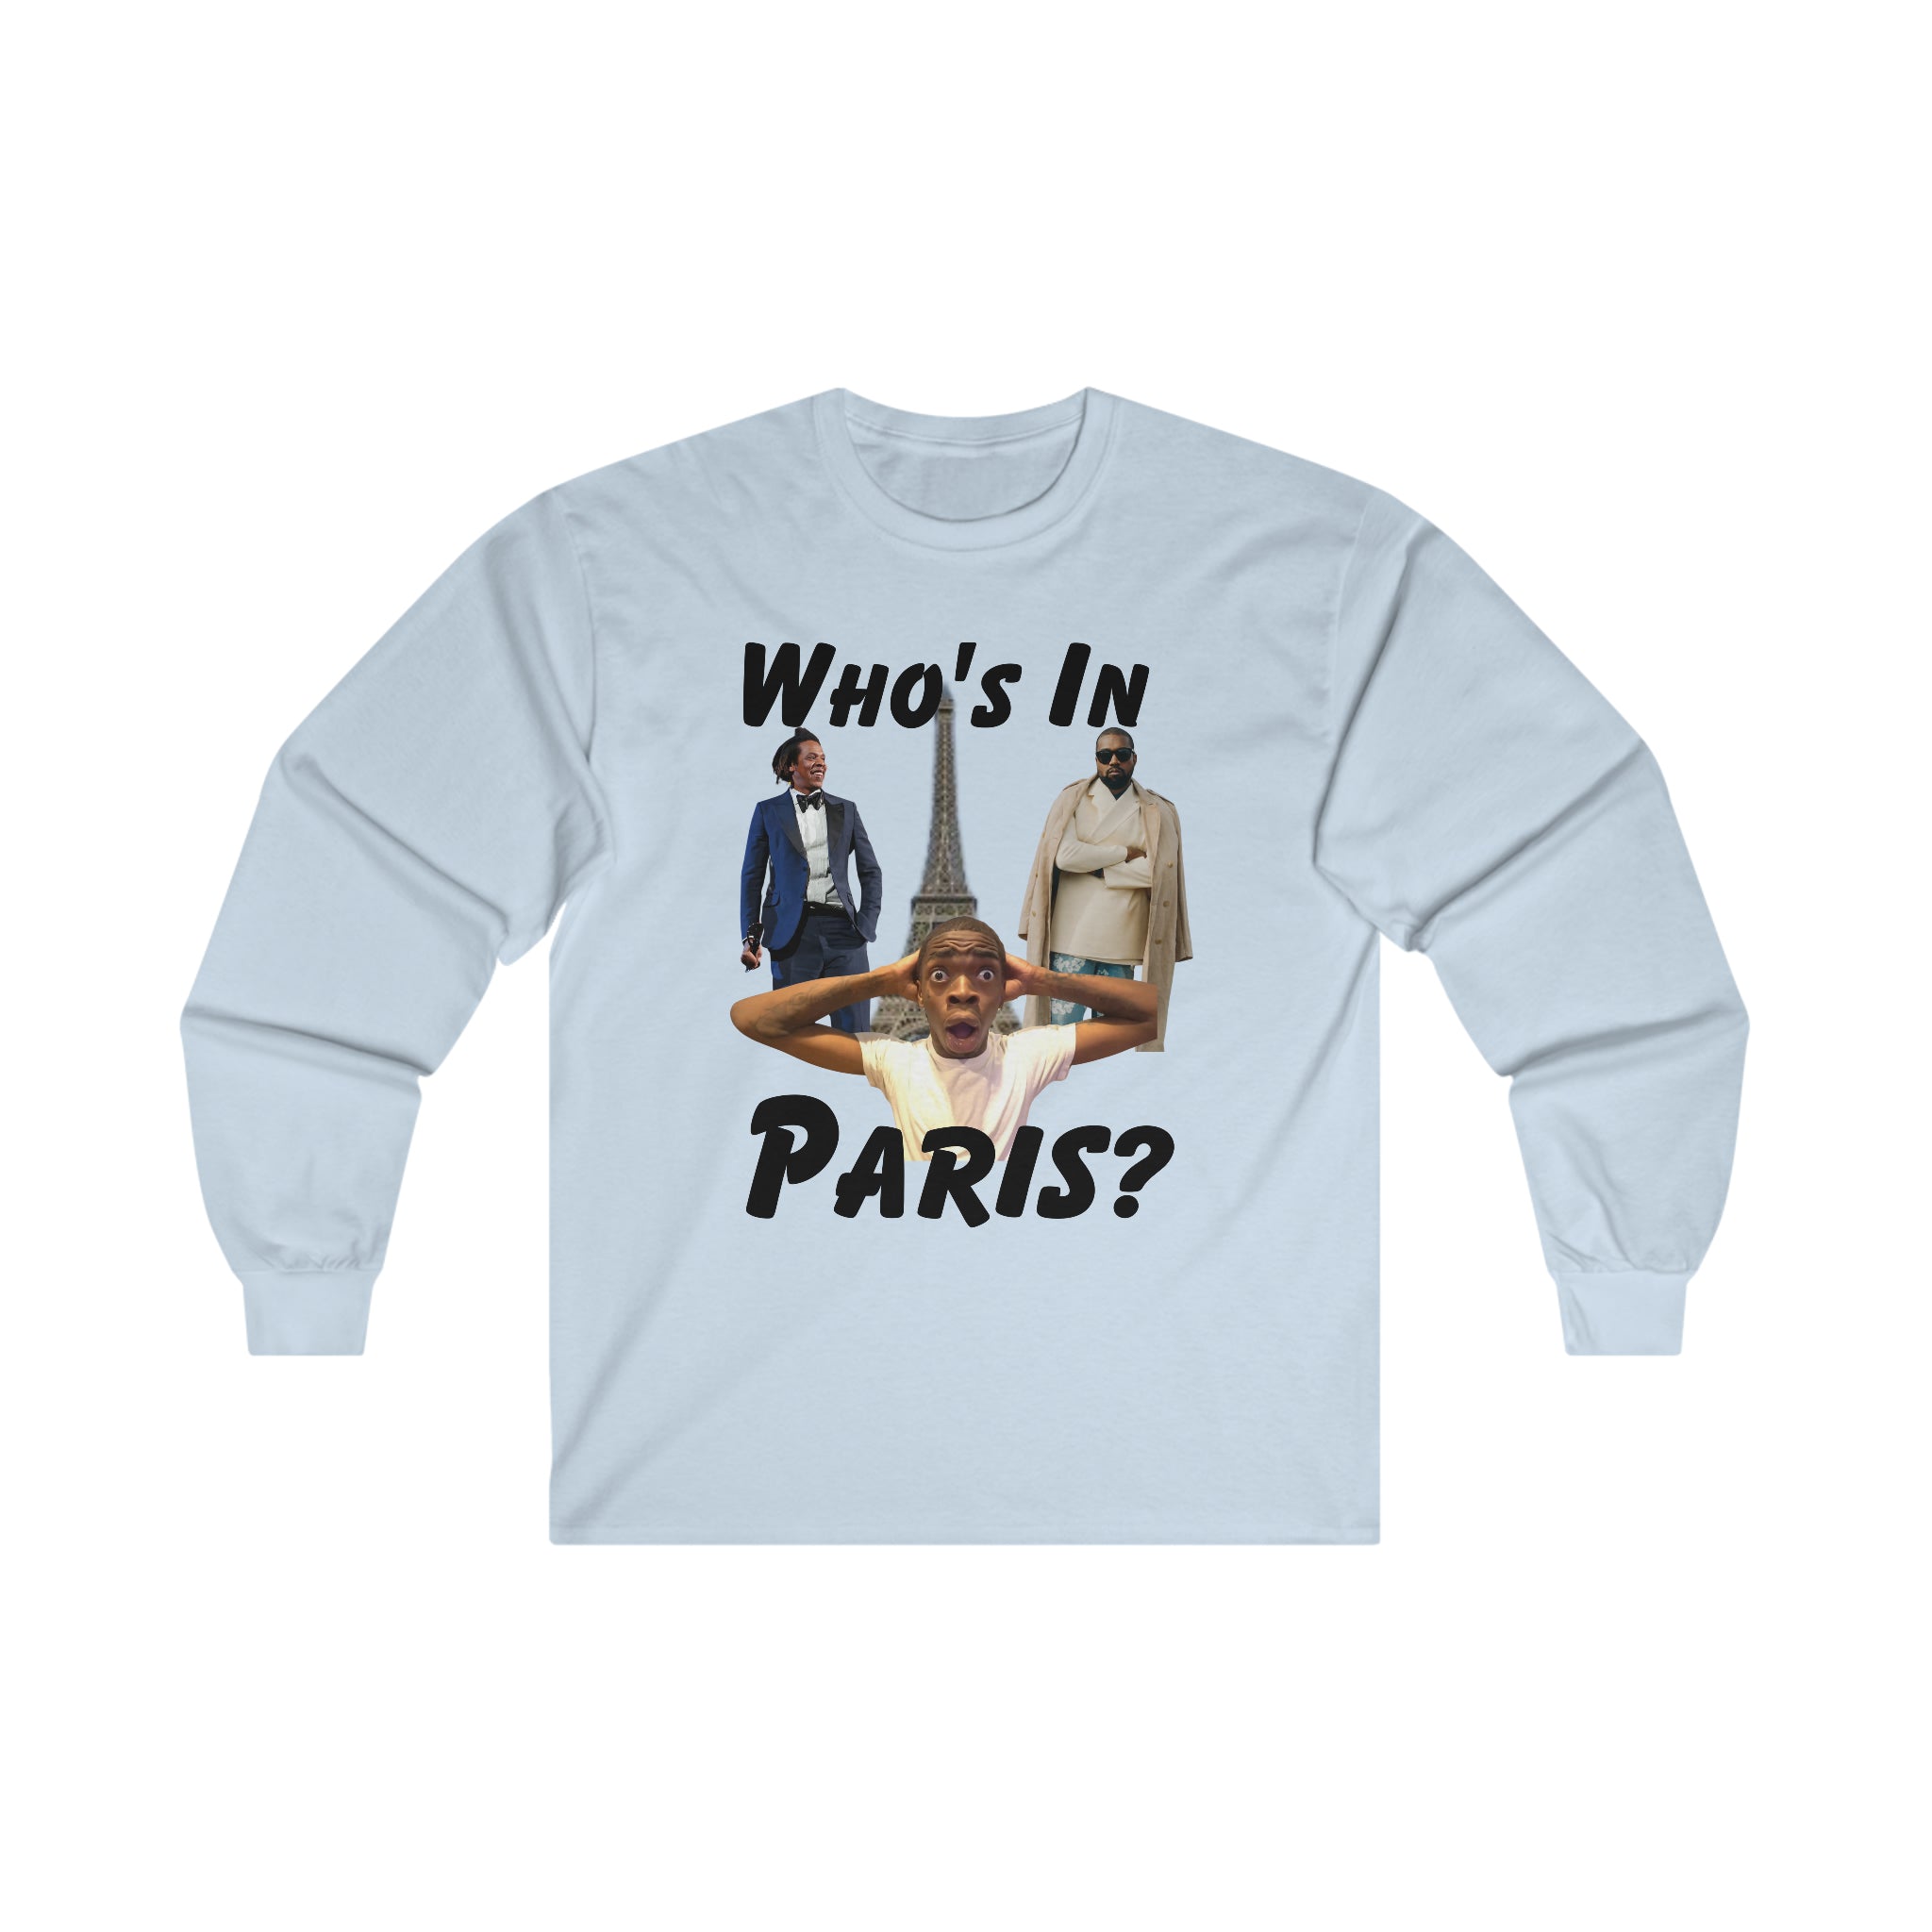 Who's In Paris?